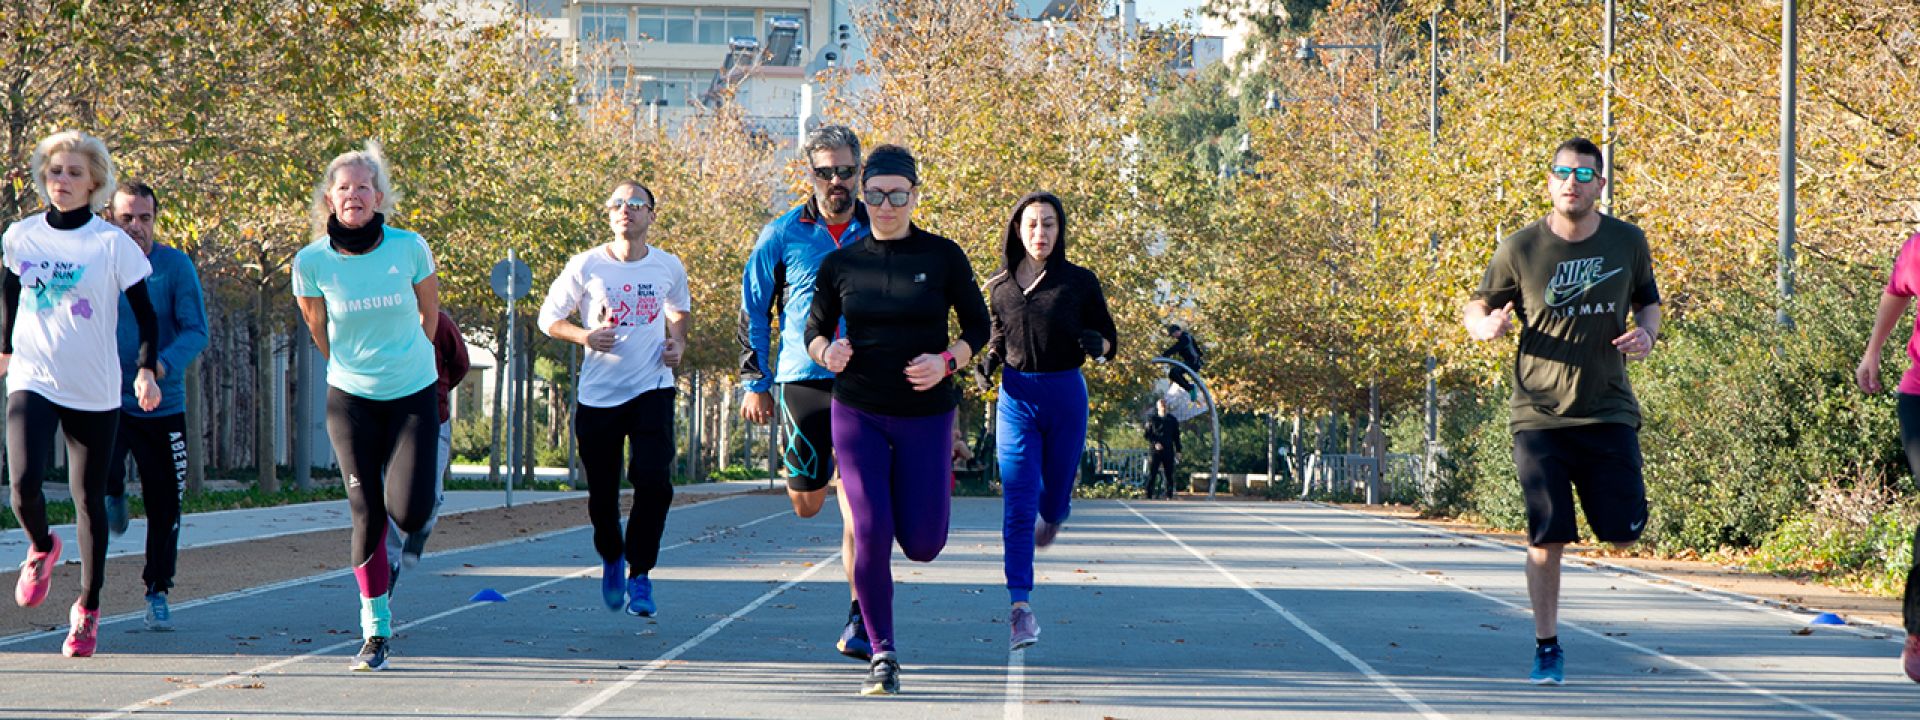 Φωτογραφία που απεικονίζει ανθρώπους να τρέχουν